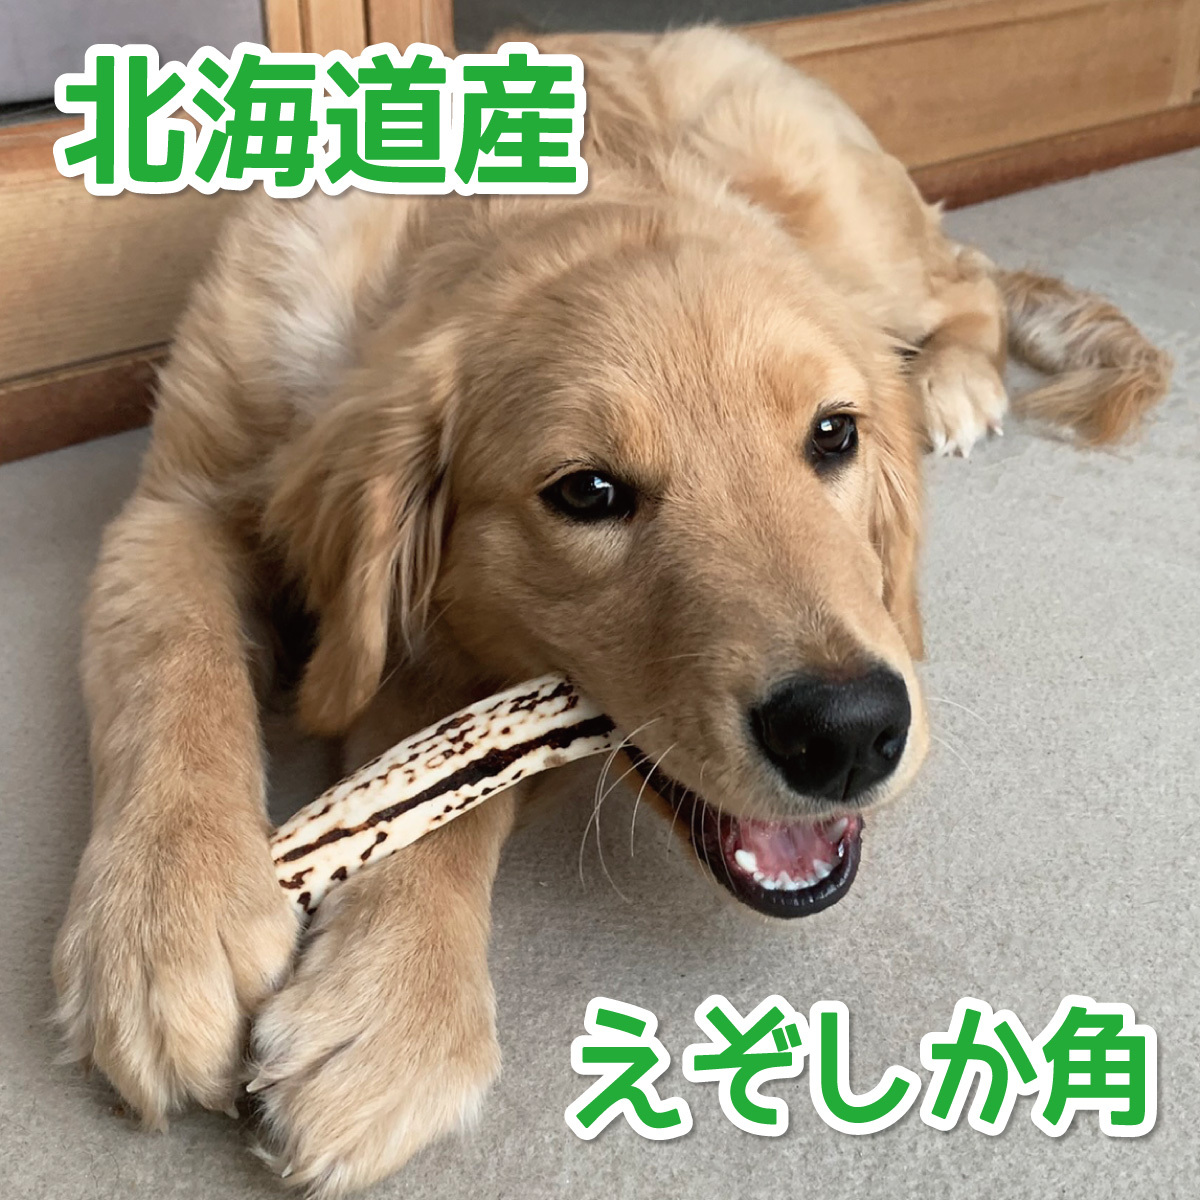 ■ 大型犬用 ■ 天然 北海道産 蝦夷鹿の角 ■ 1本 ■ 犬のおもちゃ ■ 無添加 エゾシカ ツノ 鹿の角 犬 51112